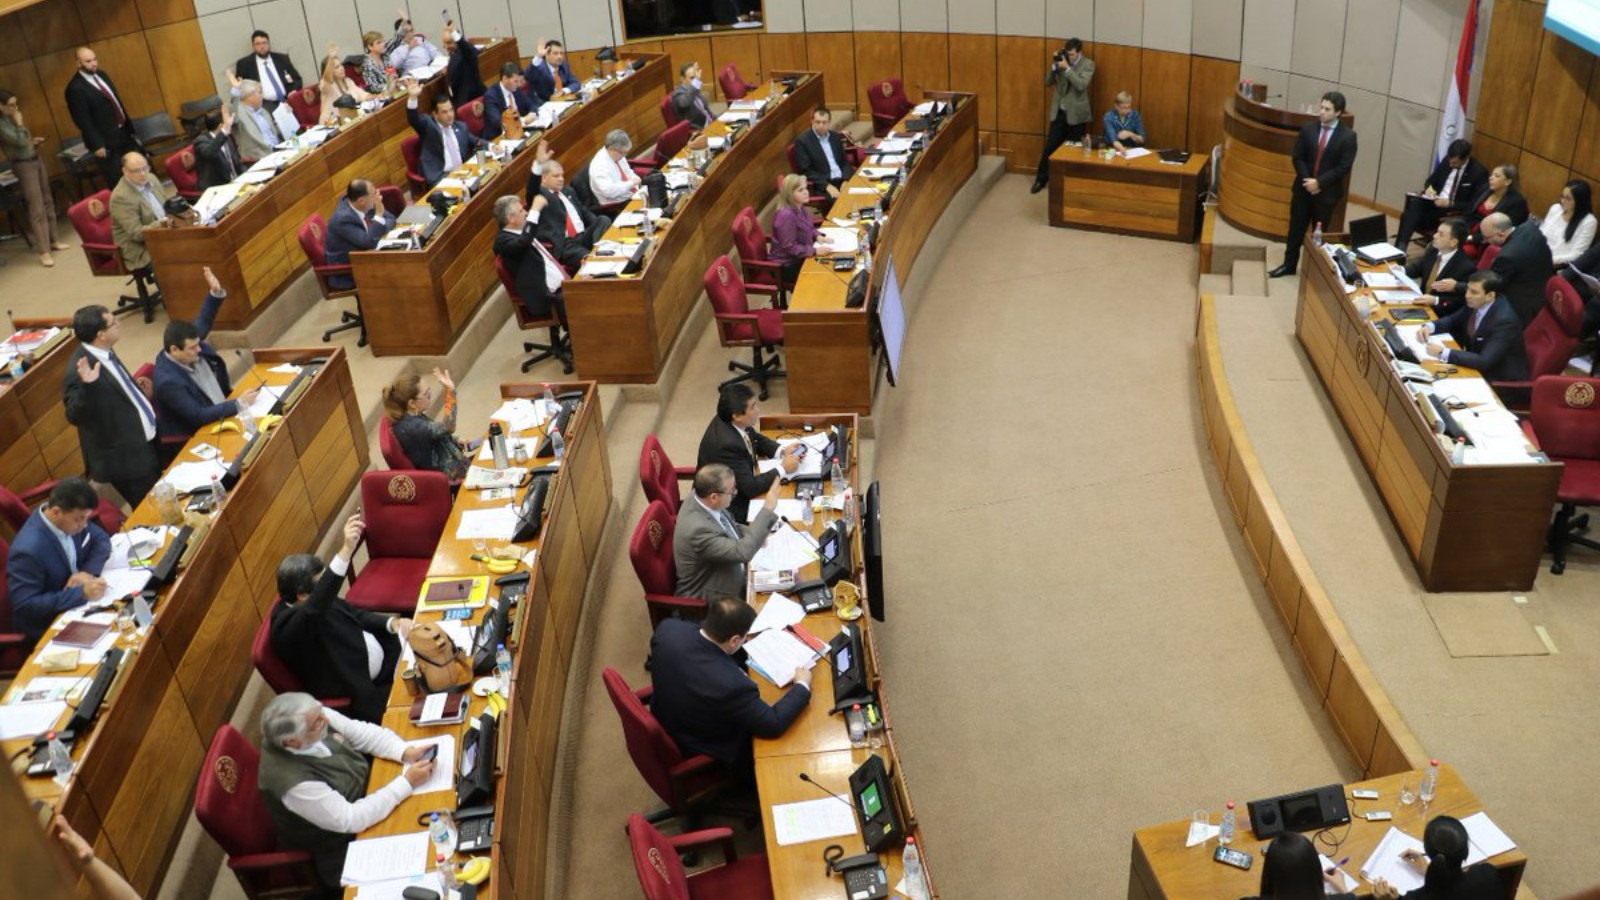 Paraguay legislature in session